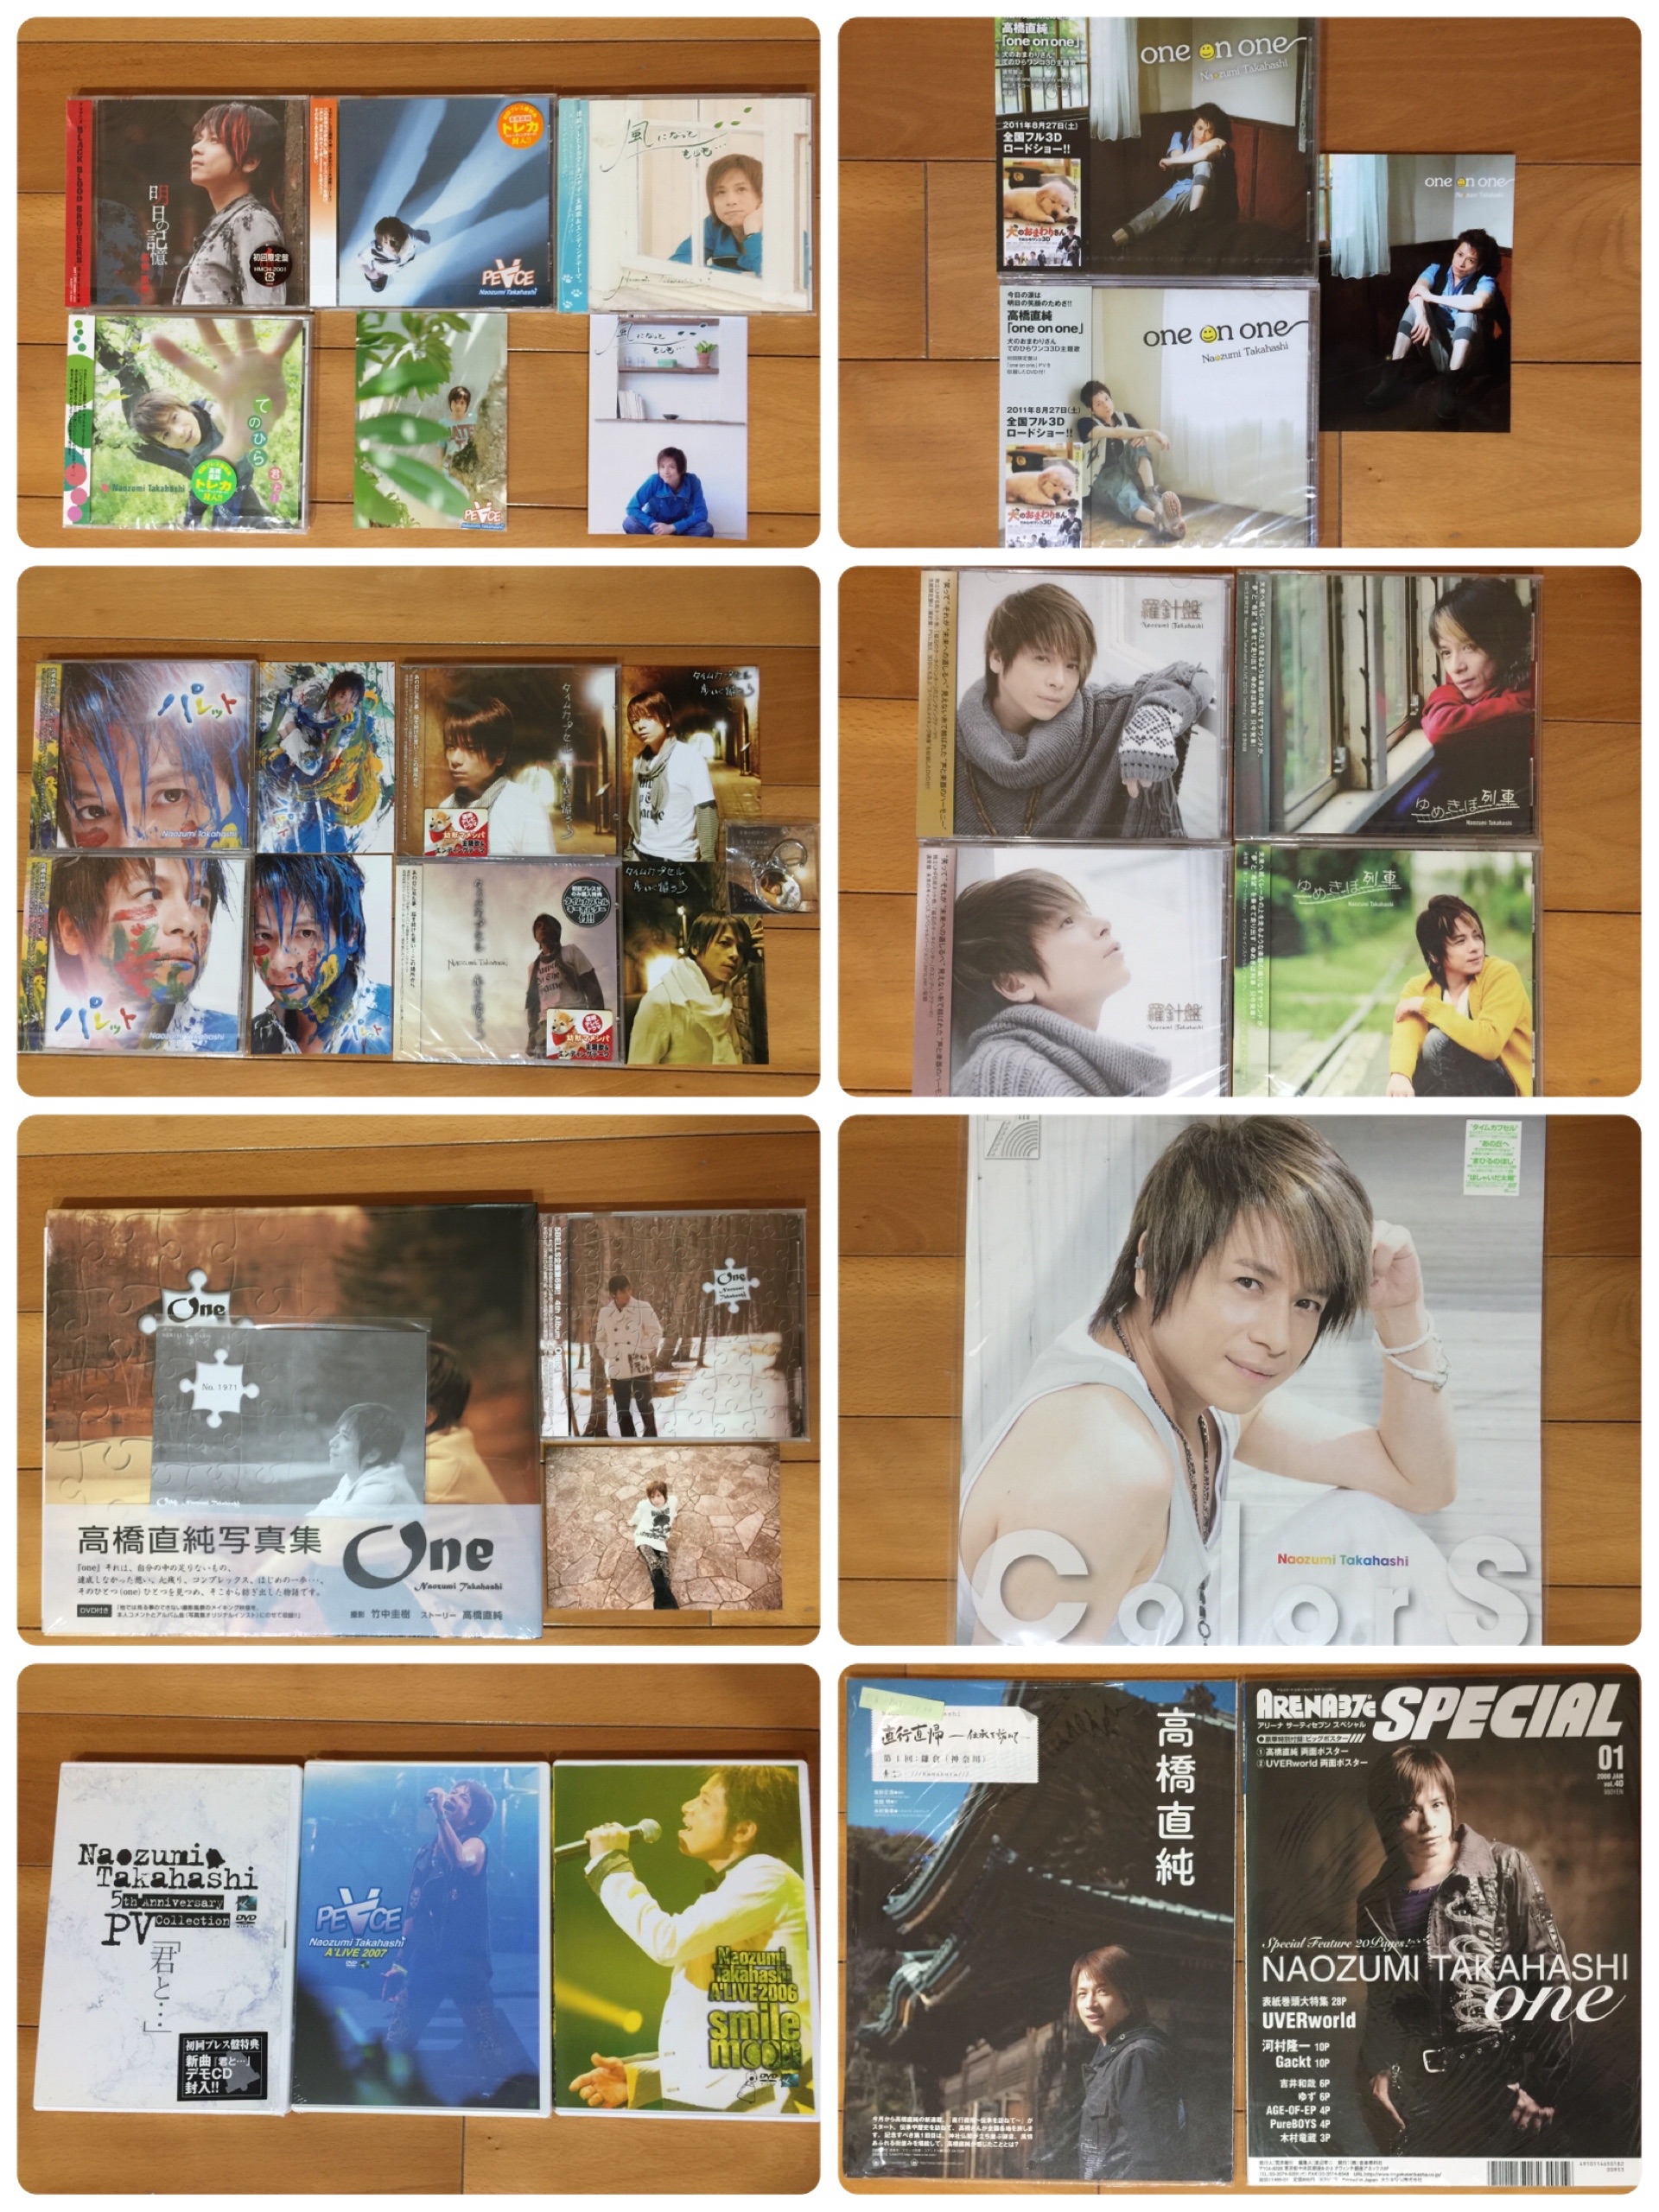 高橋直純 CD16張+DVD3張+寫真書1本+雜誌12本